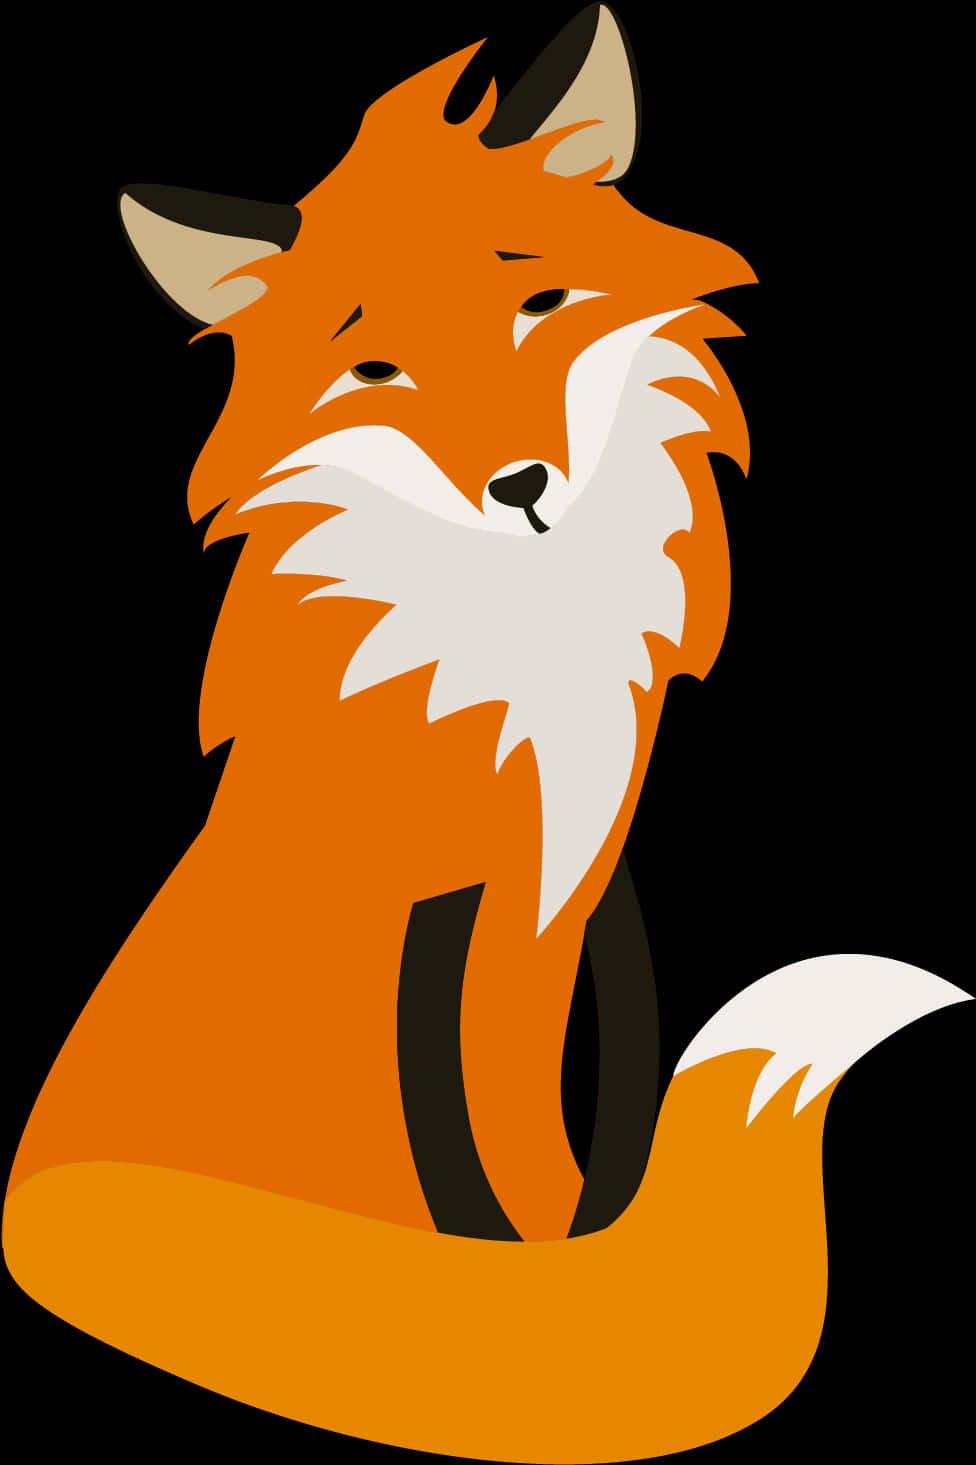 Stylized Orange Fox Illustration PNG